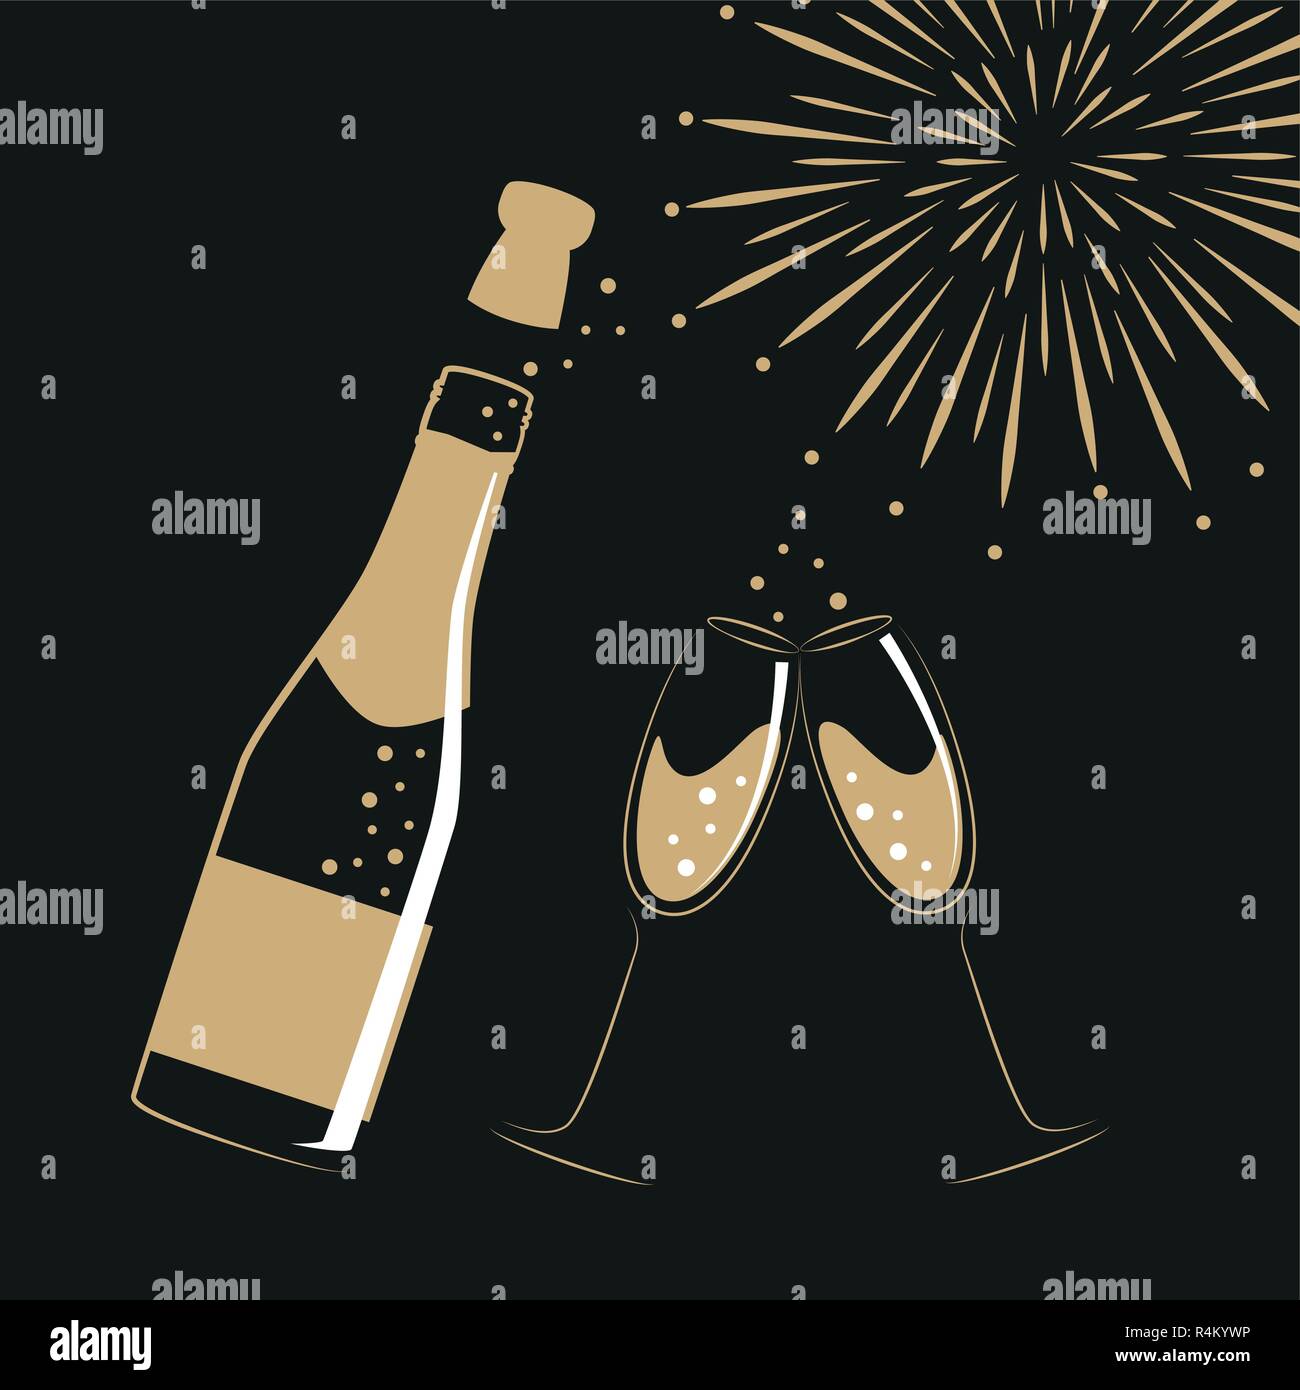 Flasche Champagner Gläser und Feuerwerk für Party und Feier Vektor-illustration EPS 10. Stock Vektor